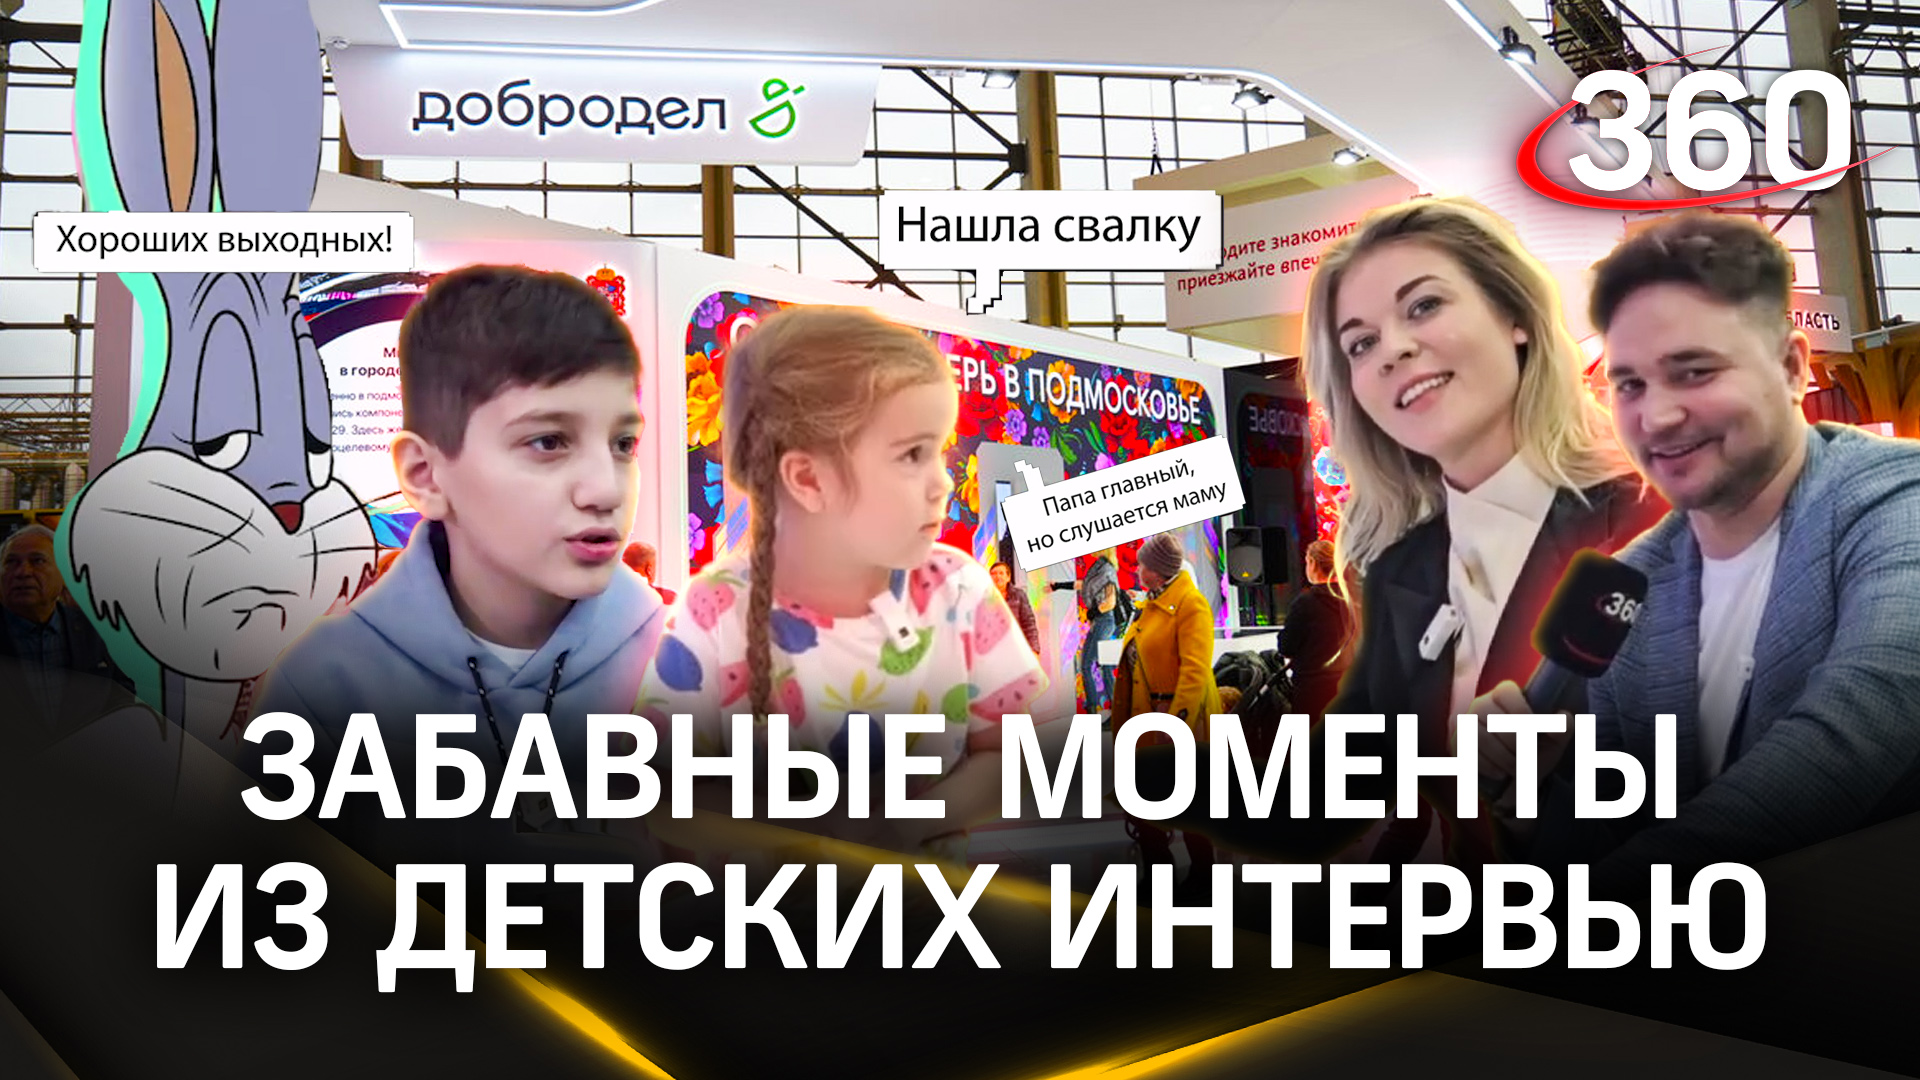 Самые забавные моменты из интервью с детьми на выставке «Россия». Студия 360 на ВДНХ